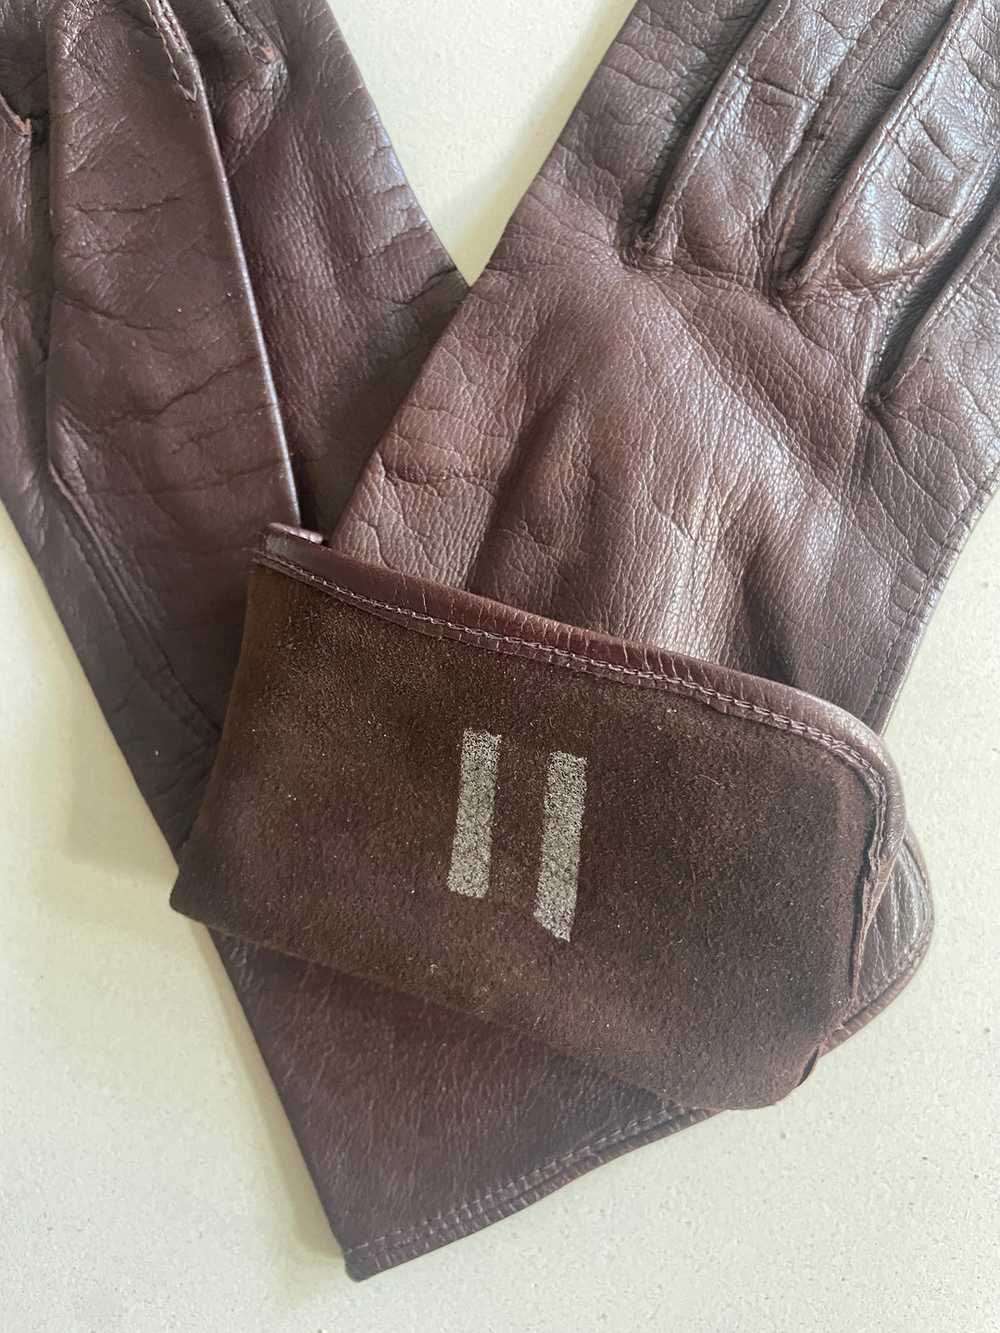 Vintage Dark Brown Kid Leather Gloves - image 3